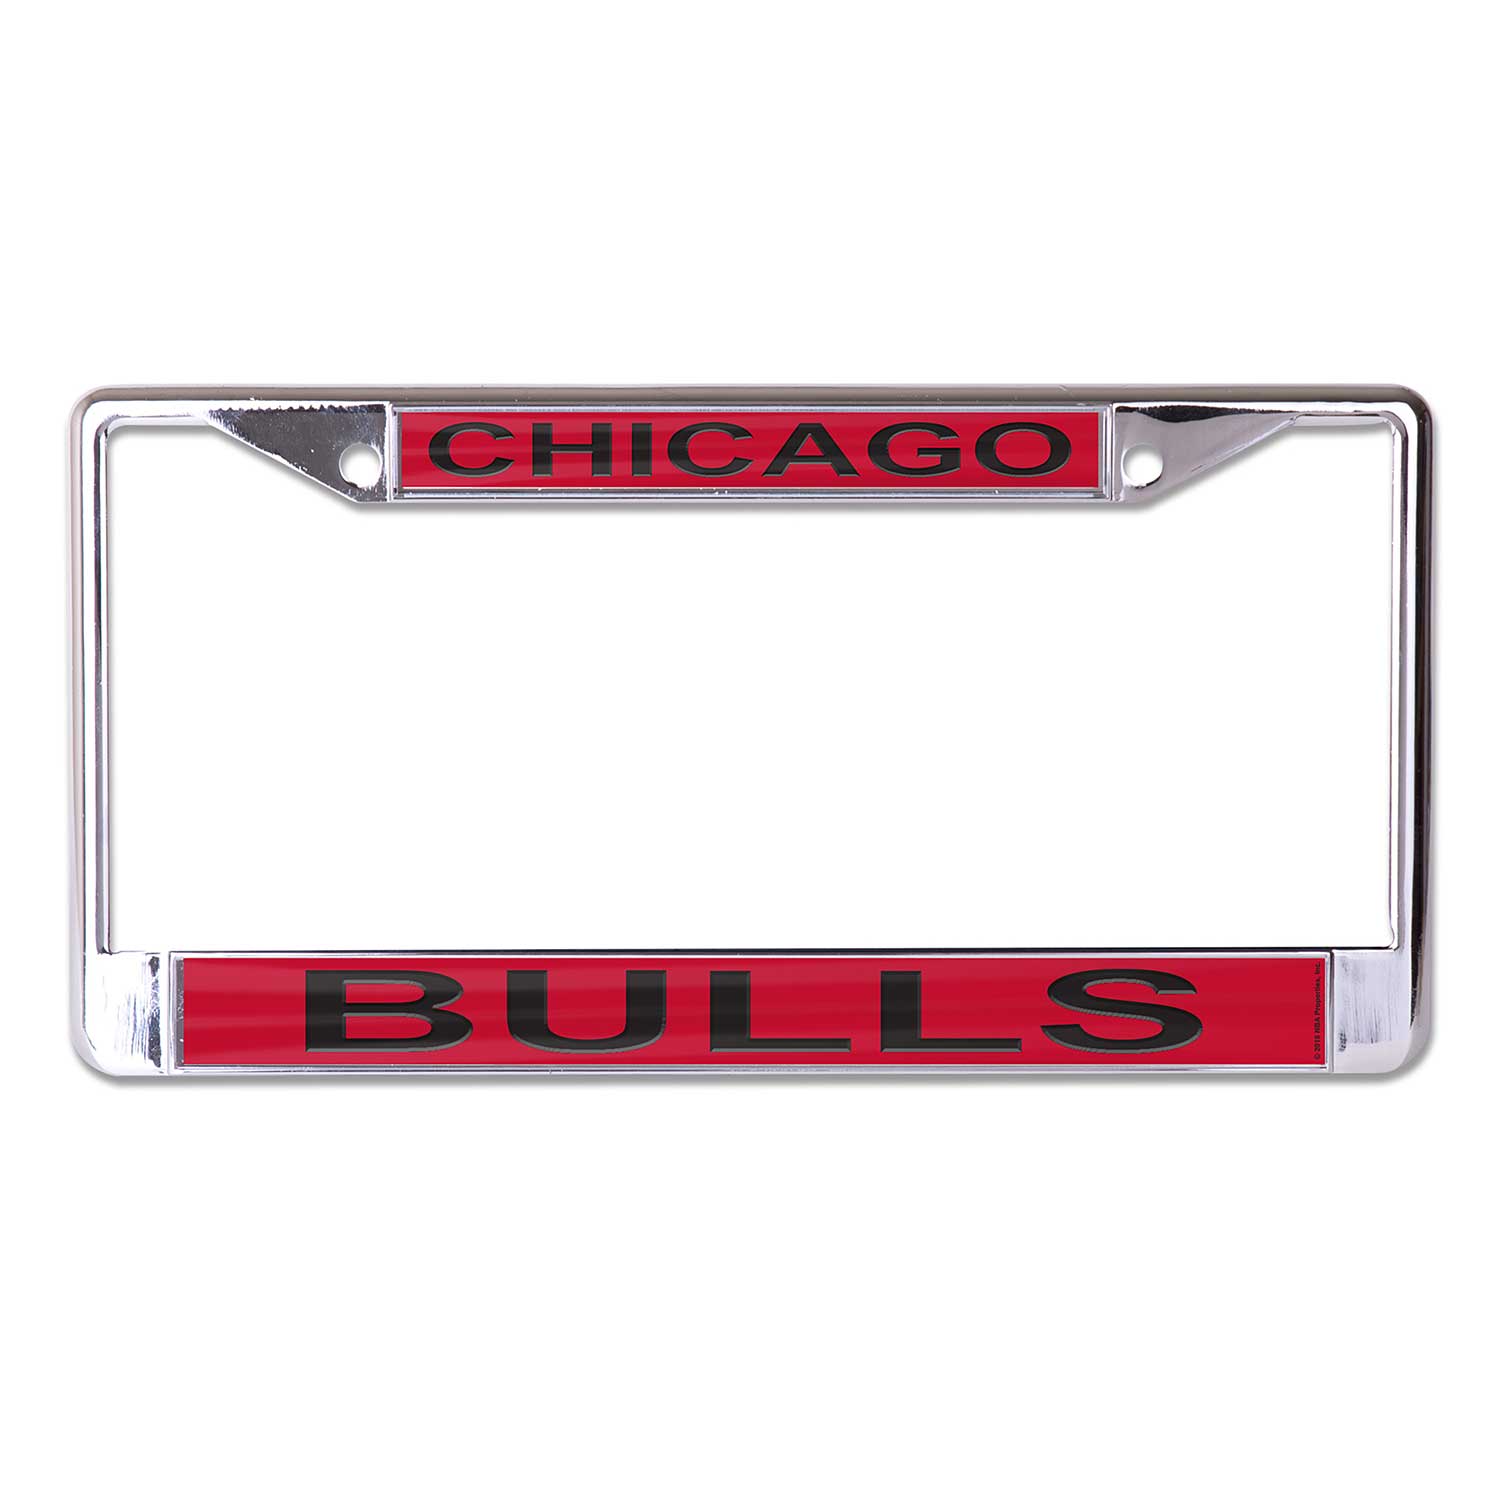 Chicago Bulls License Plate